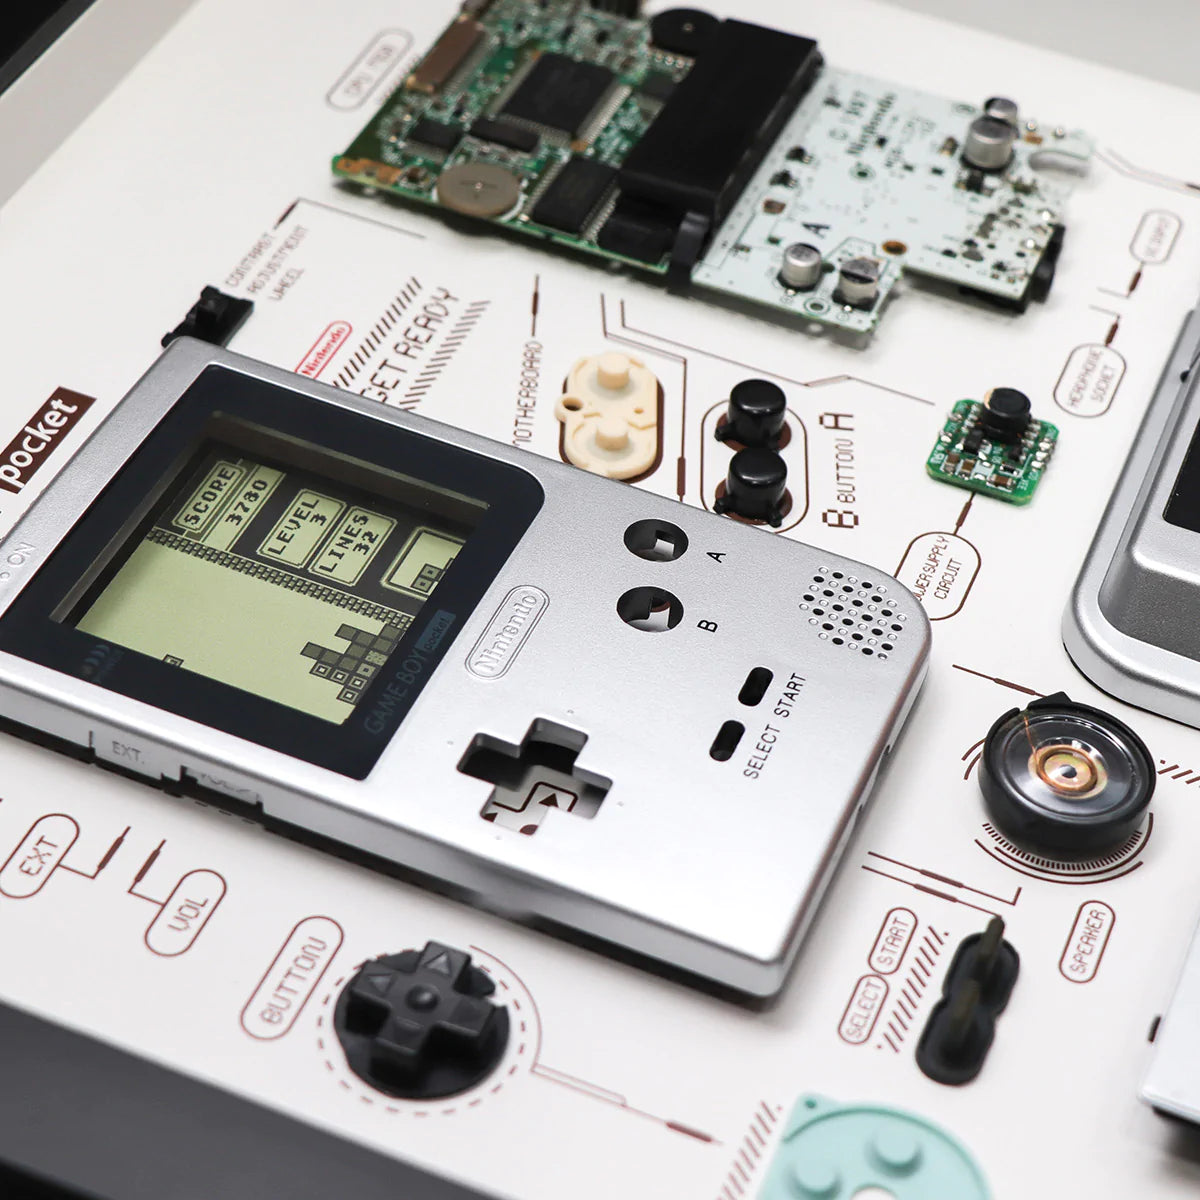 Xreart Deconstructed Nintendo Game Boy Pocket Framed Artwork